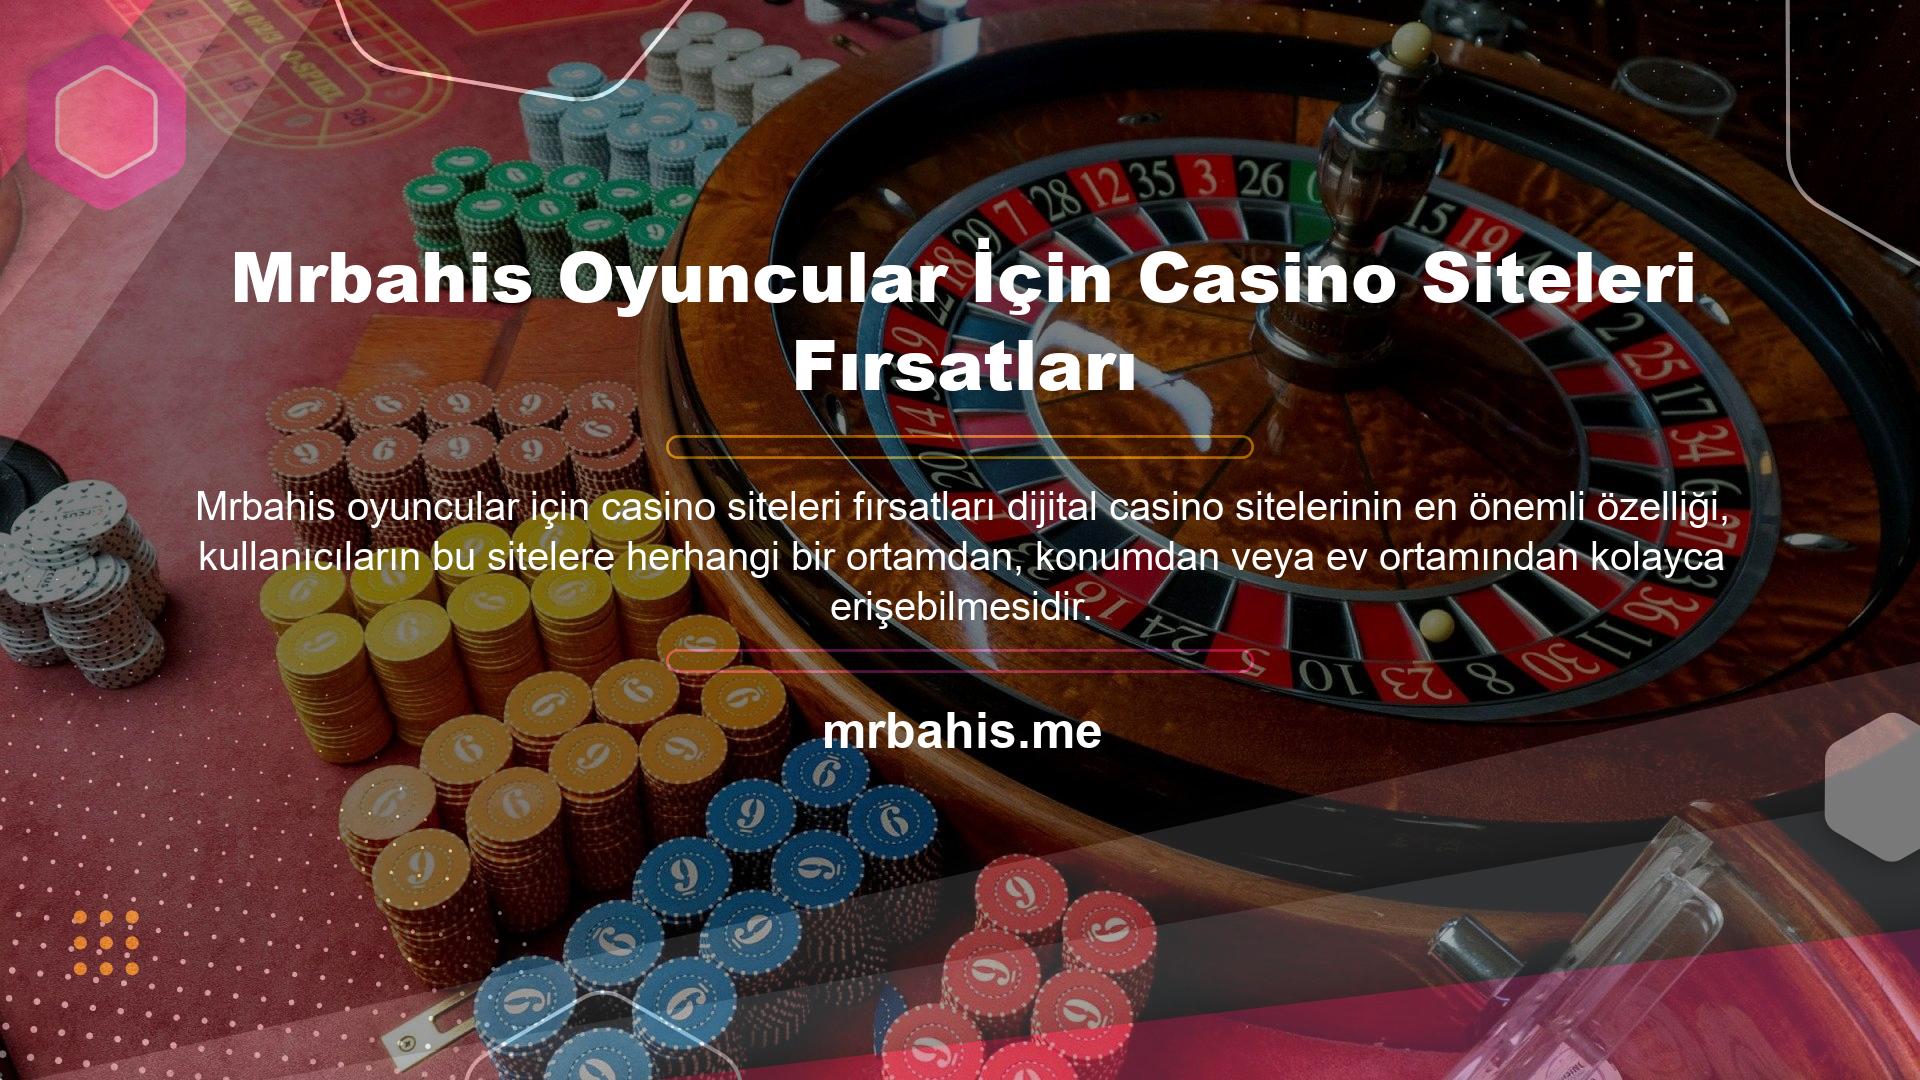 Canlı casino siteleri, kullanıcıların istedikleri zaman doğrudan bir bağlantı aracılığıyla casino lobisine giriş yapmalarına izin verir